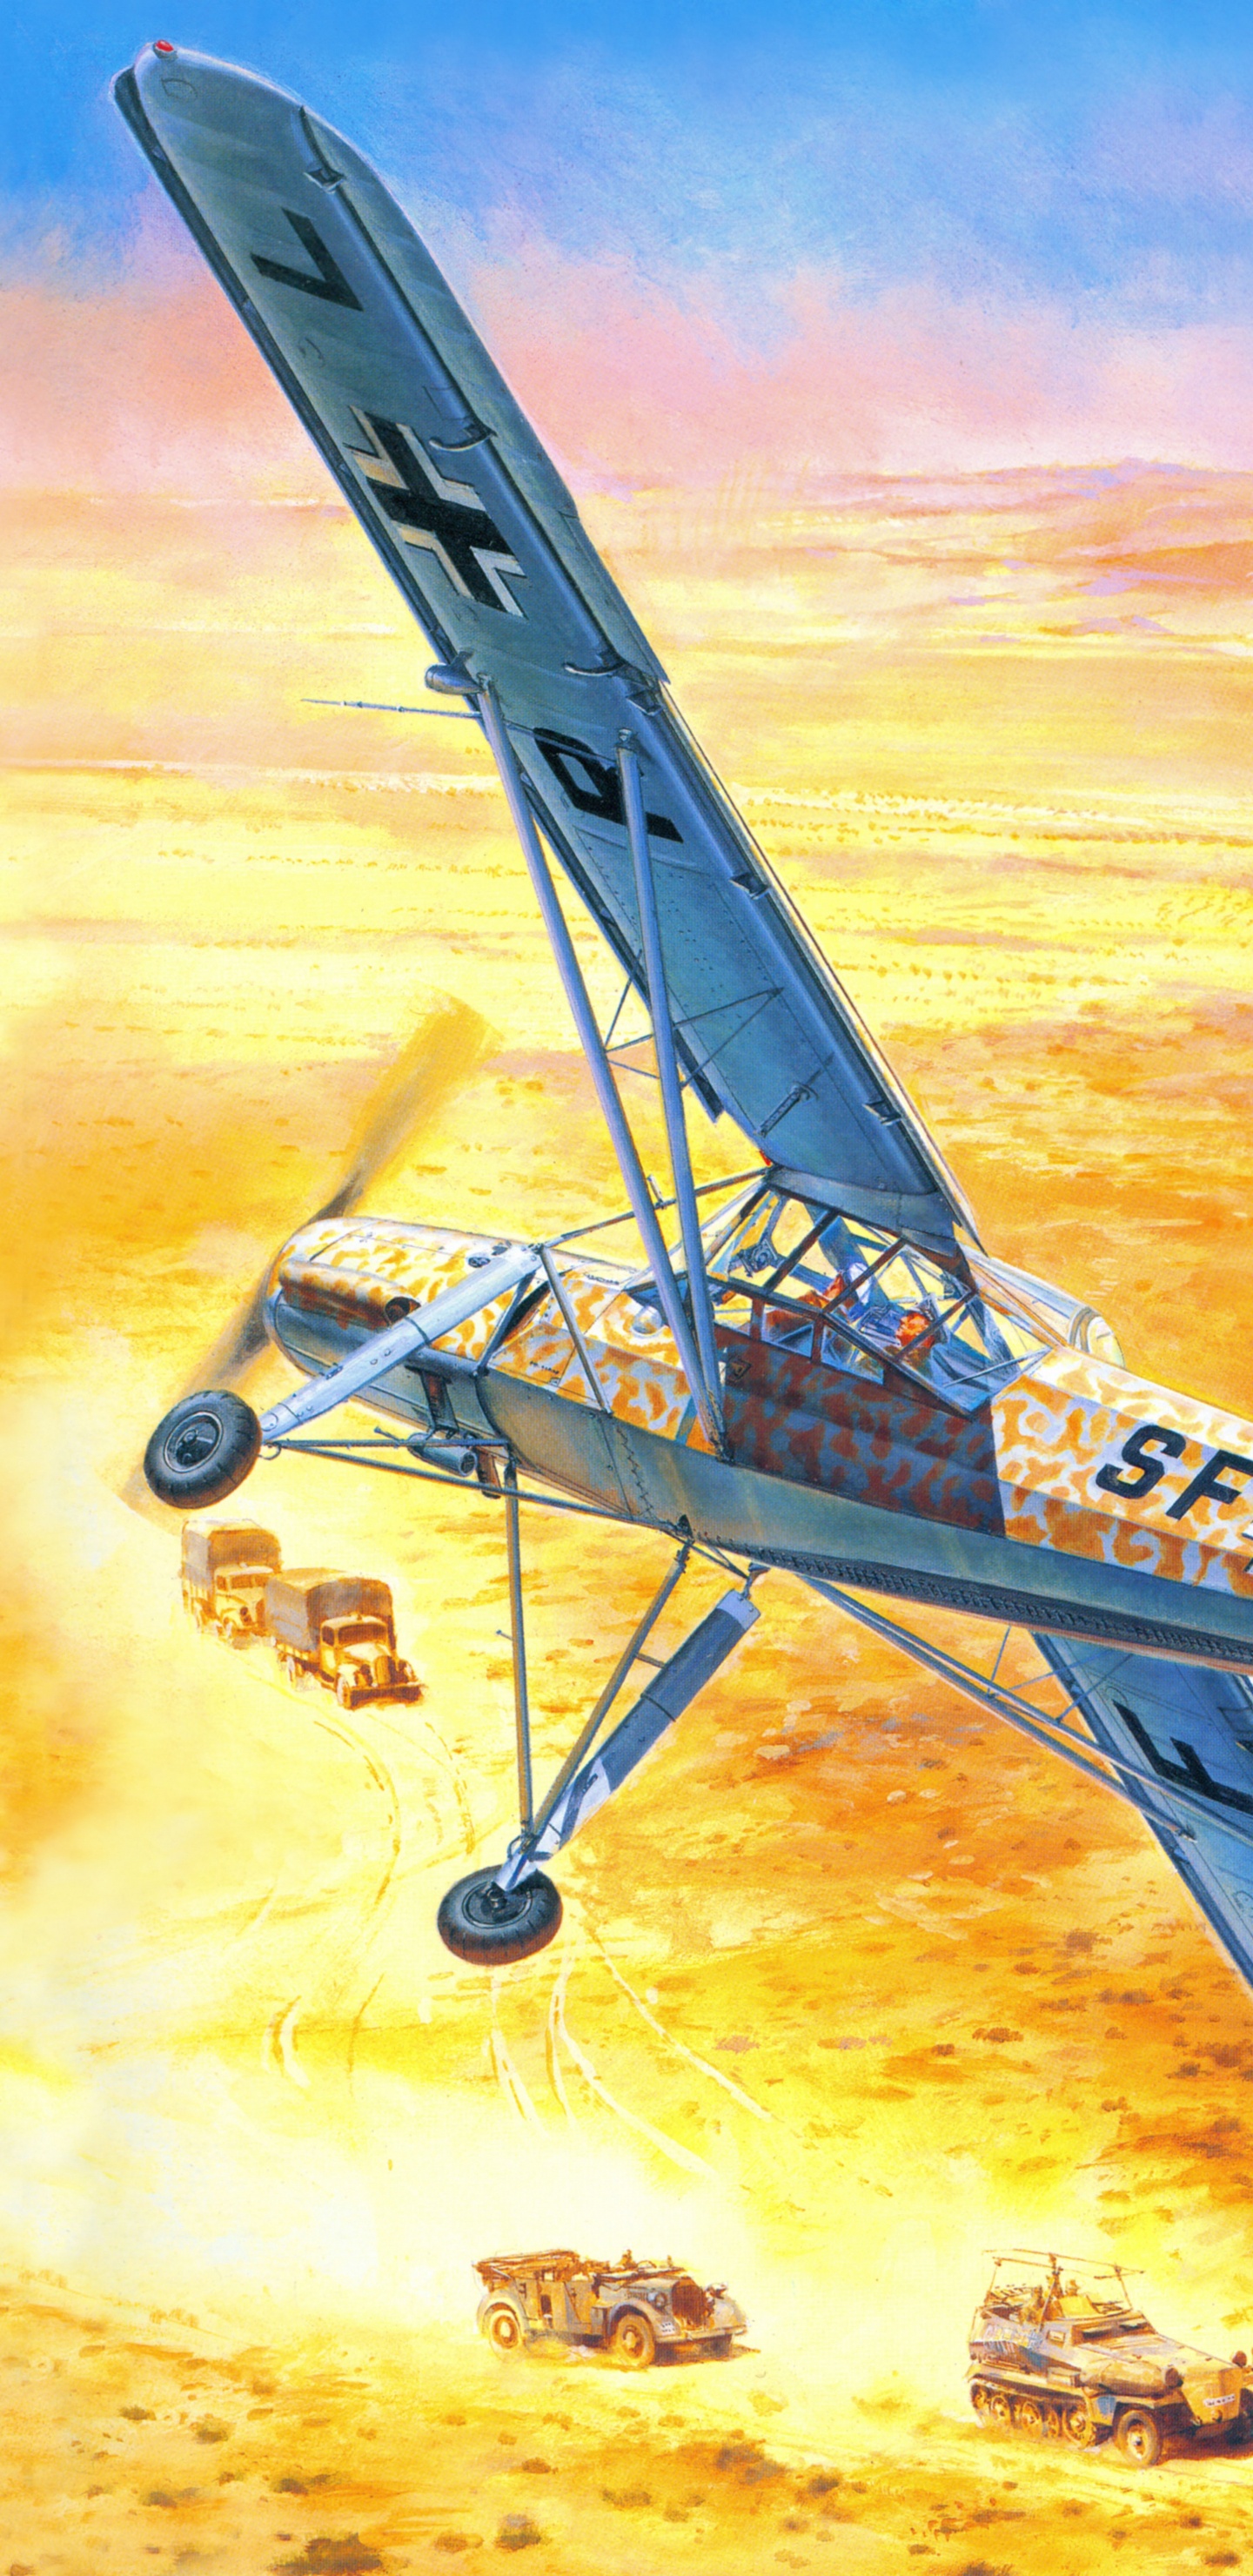 Blaues Und Weißes Flugzeug, Das in Den Himmel Fliegt. Wallpaper in 1440x2960 Resolution